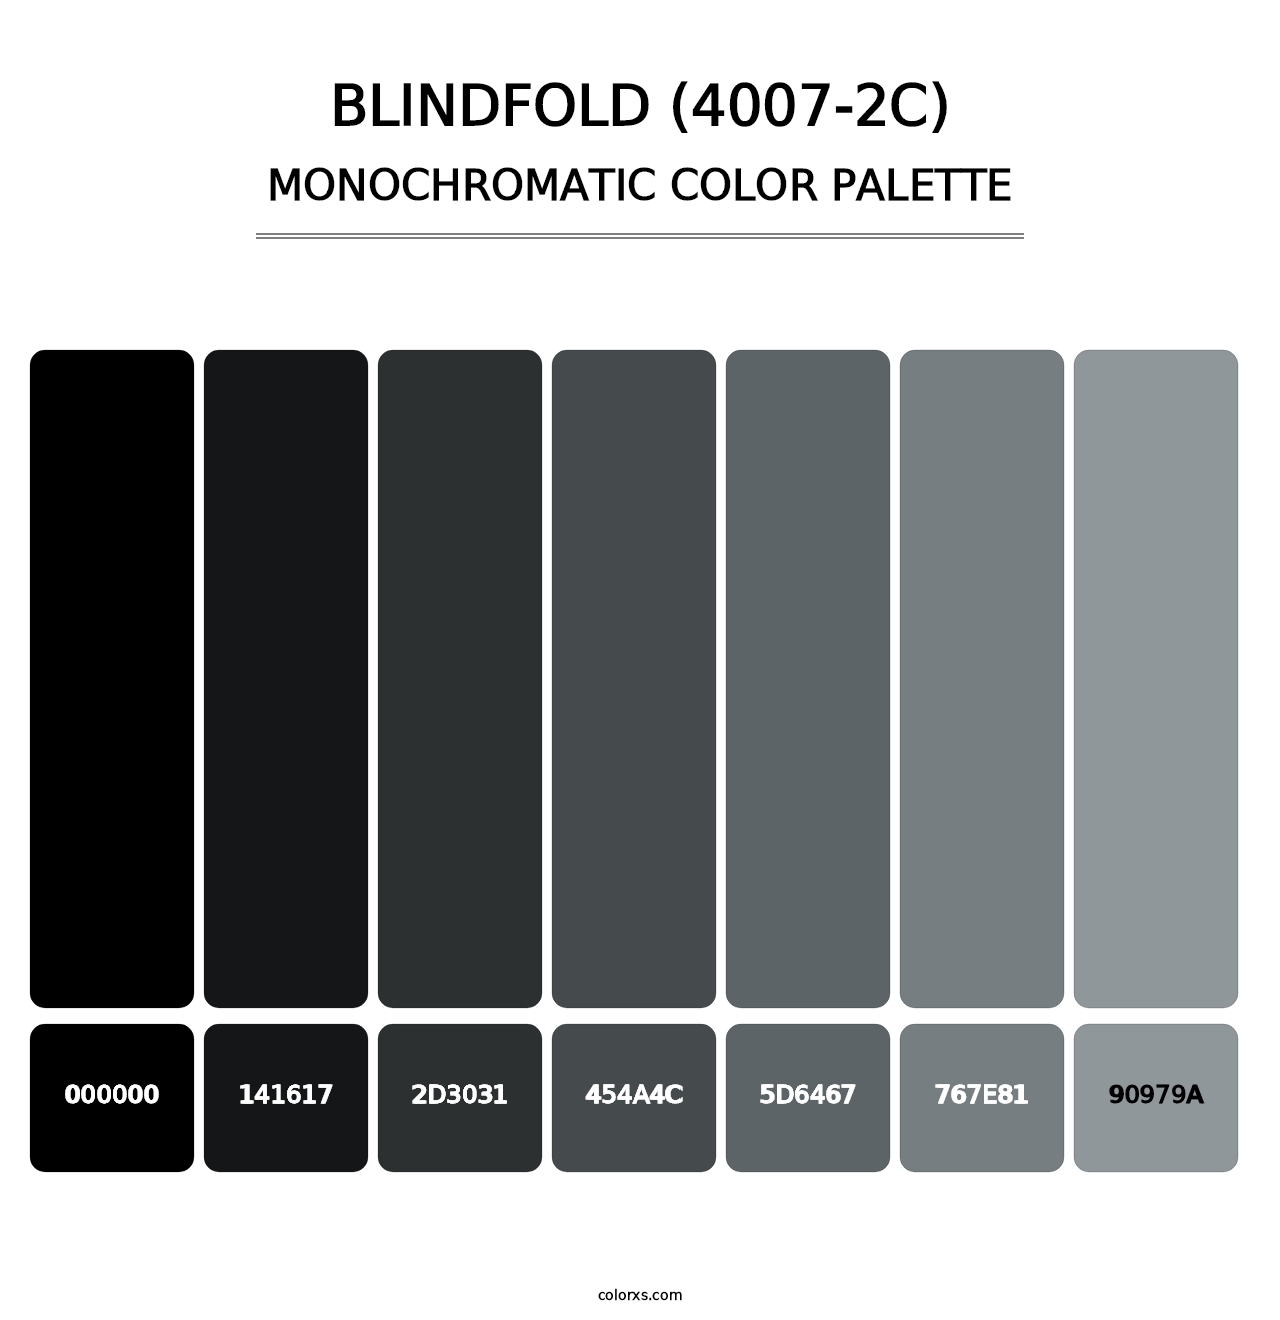 Blindfold (4007-2C) - Monochromatic Color Palette